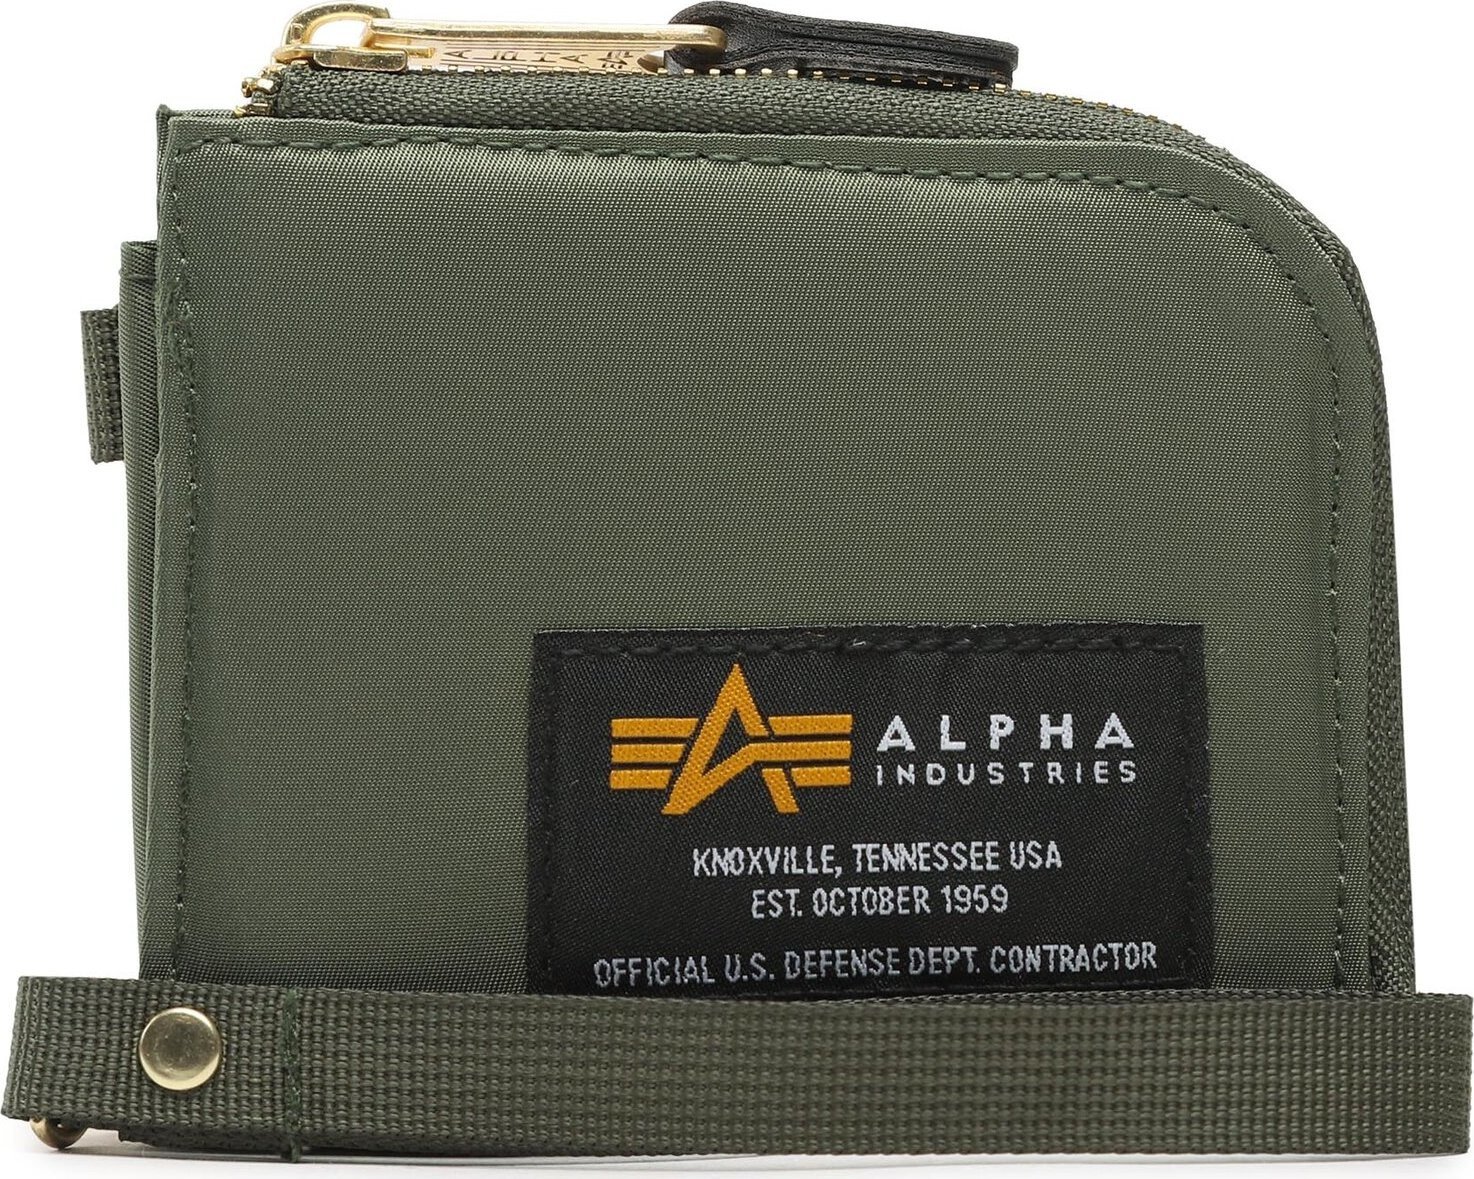 Velká pánská peněženka Alpha Industries Label Wallet 108957 Sage/Green 01